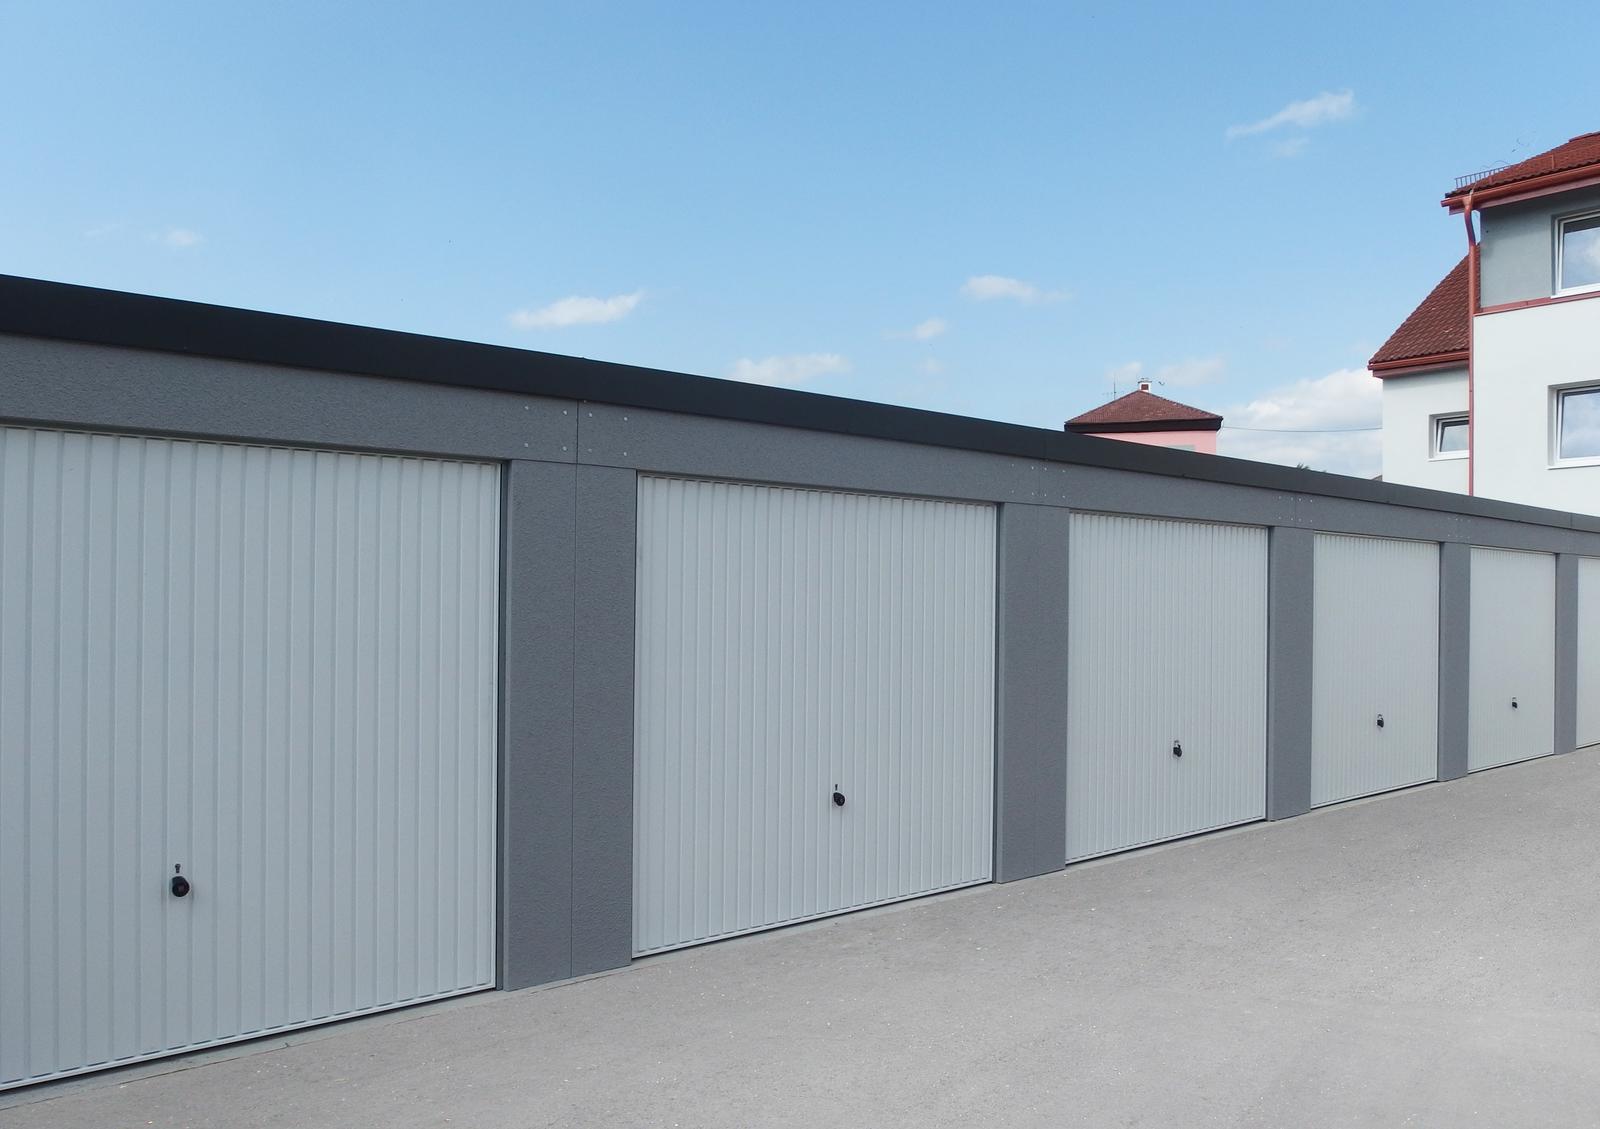 Montované garáže GARDEON - Radové garáže v šedej omietke s bielymi výklopnými bránami